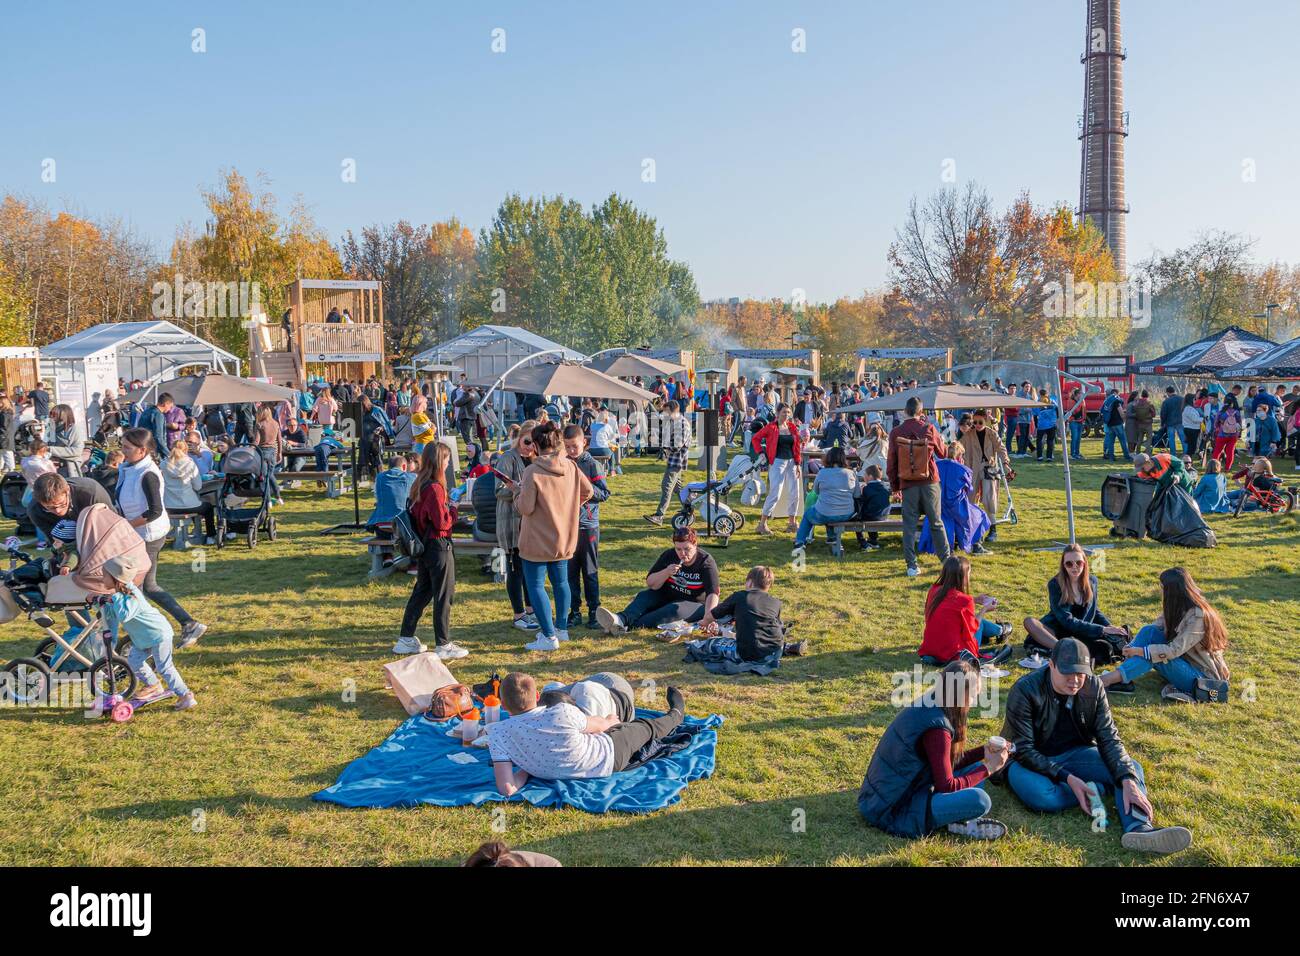 Kazan, Russia - 03 ottobre 2020: I residenti si rilassano, si siedono e si trovano sul prato nel parco cittadino, intorno al quale ci sono molti ristoranti mobili barbecue. Foto Stock